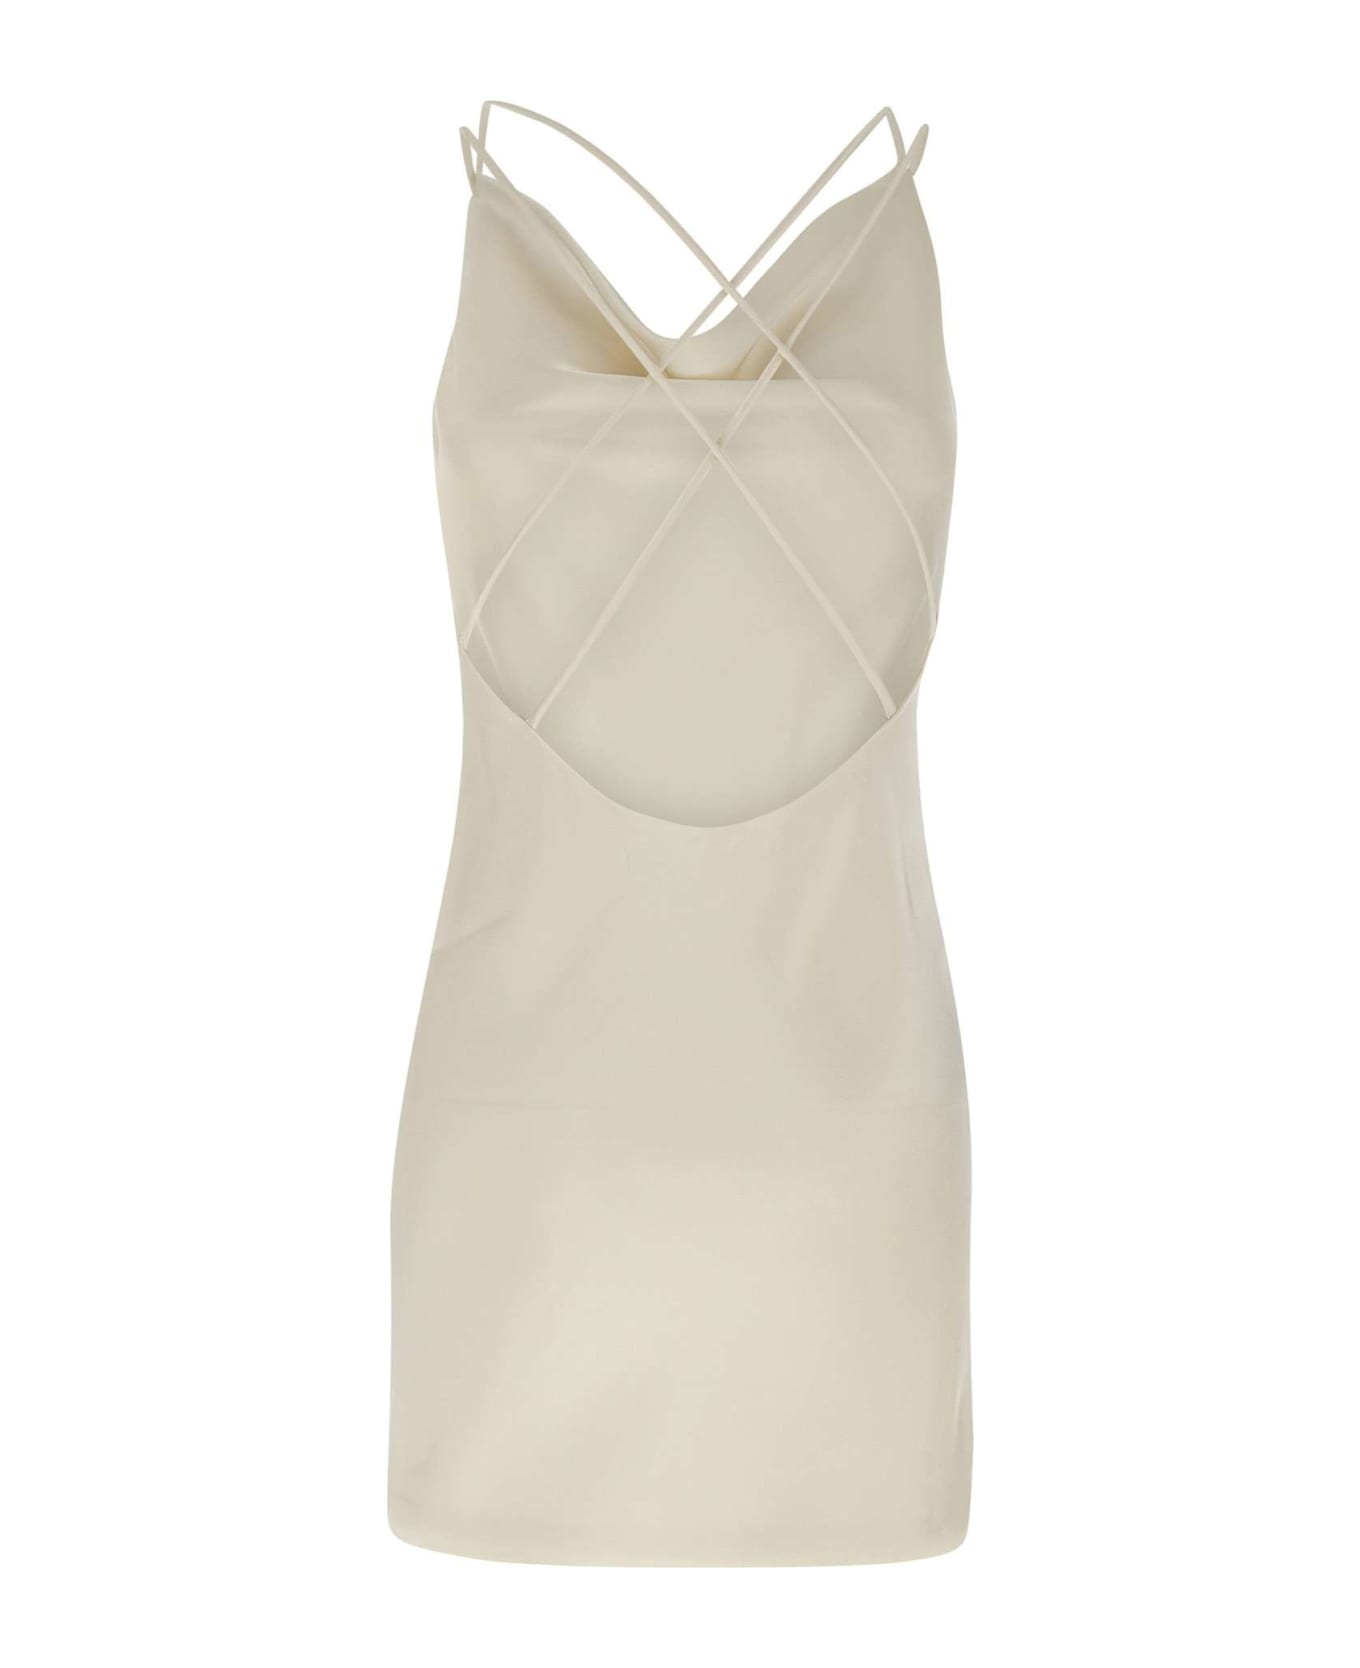 Rotate by Birger Christensen "satin Mini Slip" Dress - WHITE